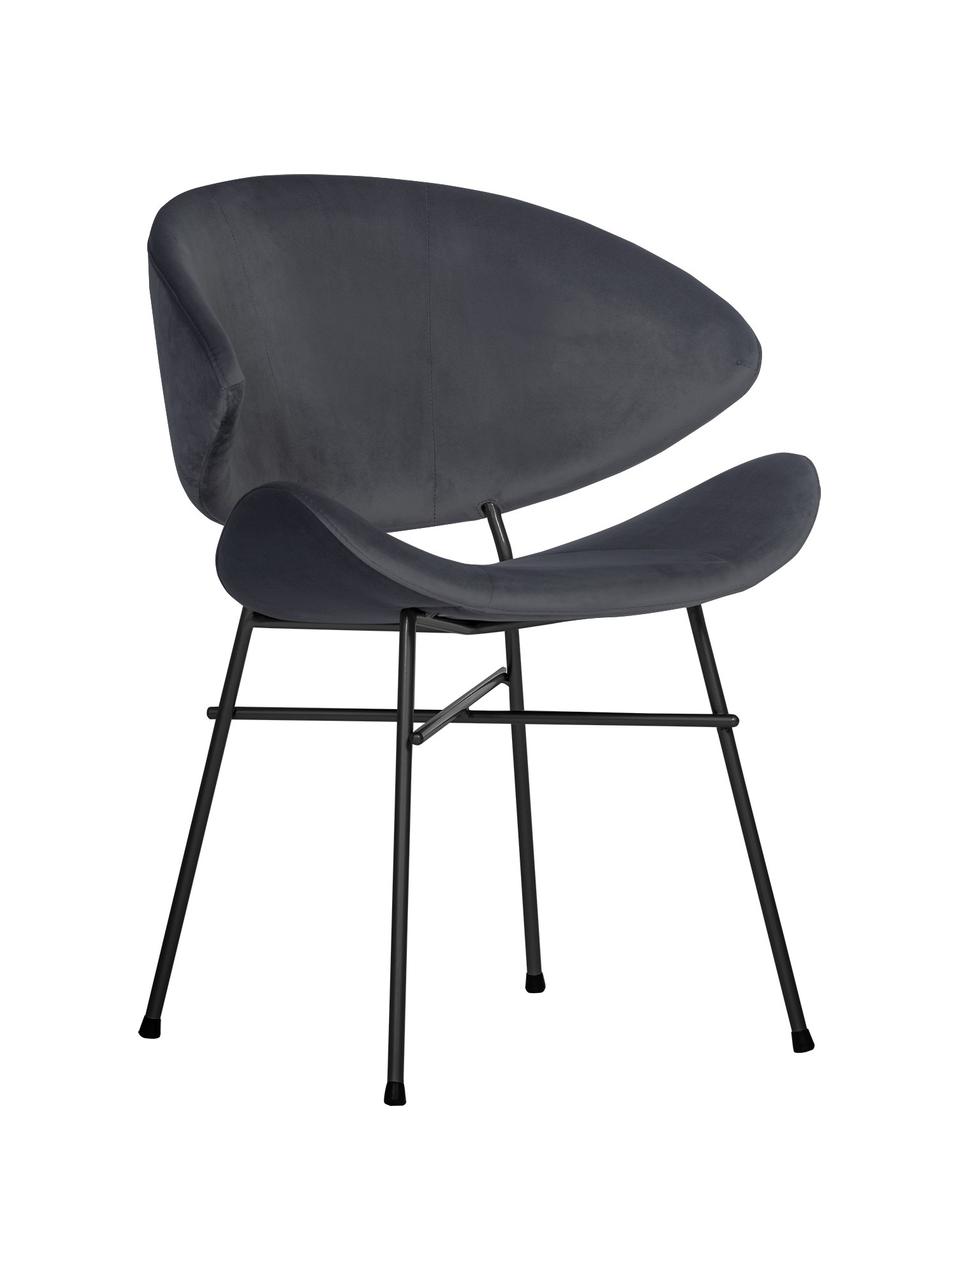 Krzesło tapicerowane z weluru Cheri, Tapicerka: 100% poliester (welur), w, Stelaż: stal malowana proszkowo, Ciemny  szary, czarny, S 57 x G 55 cm